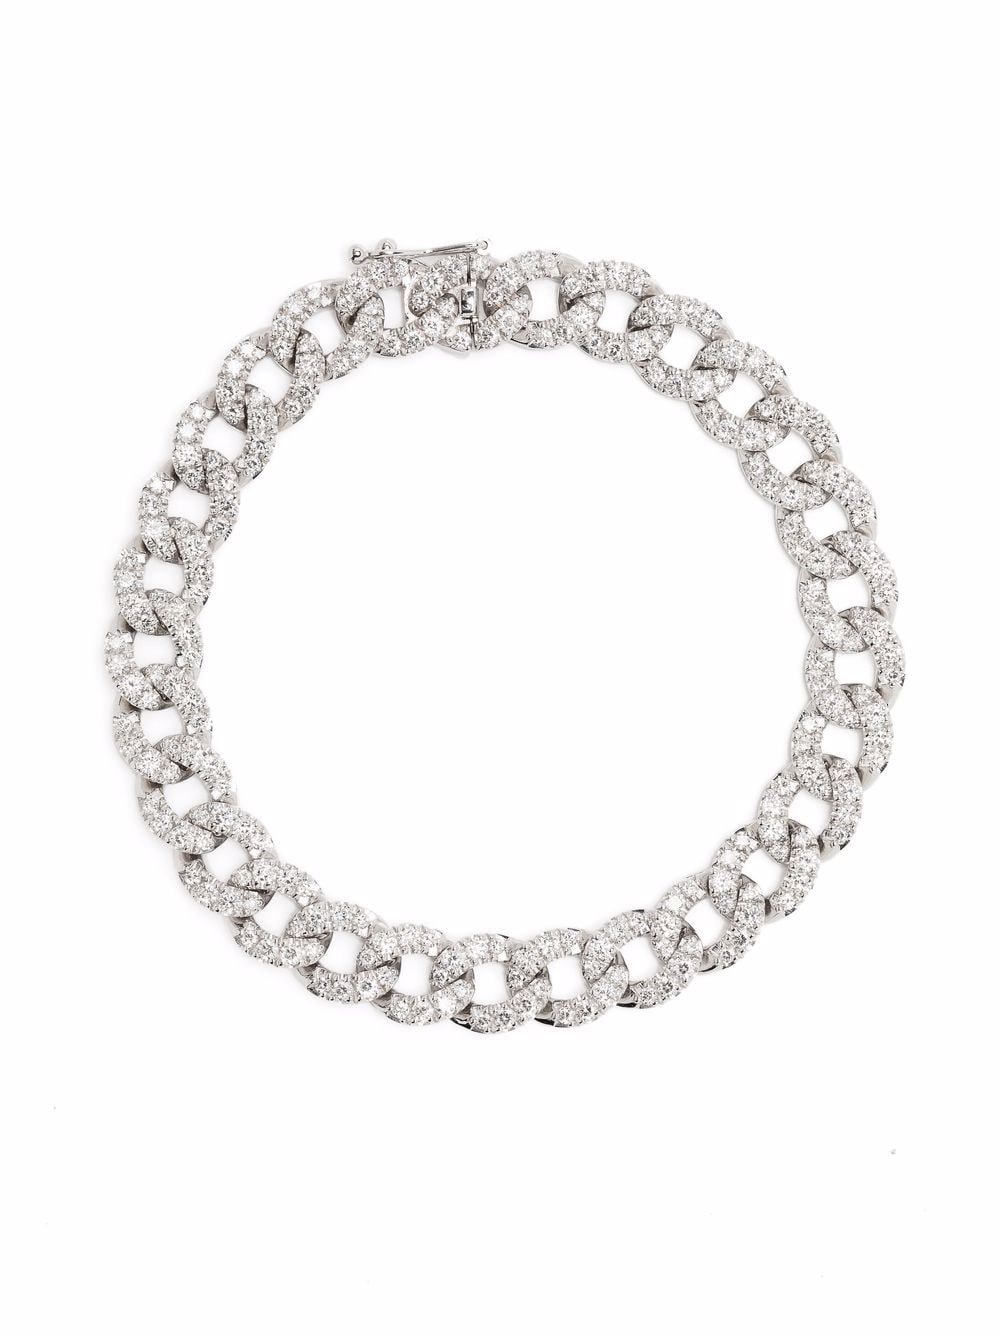 18kt white gold Groumette diamond bracelet